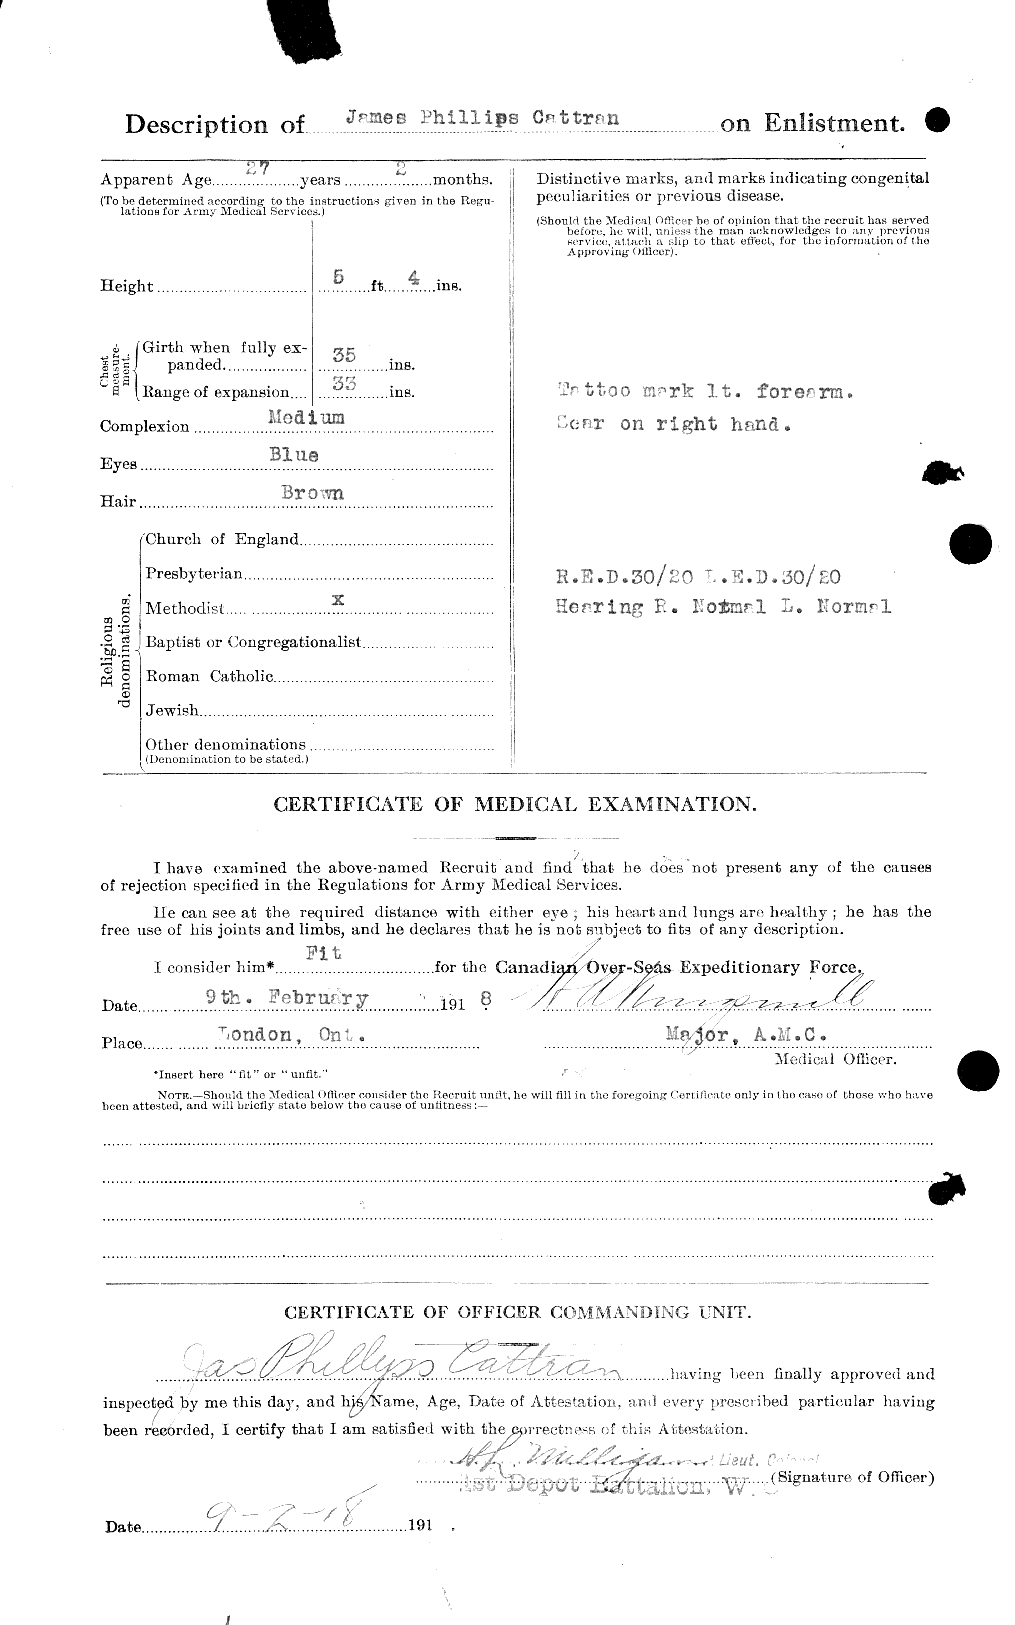 Dossiers du Personnel de la Première Guerre mondiale - CEC 007464b